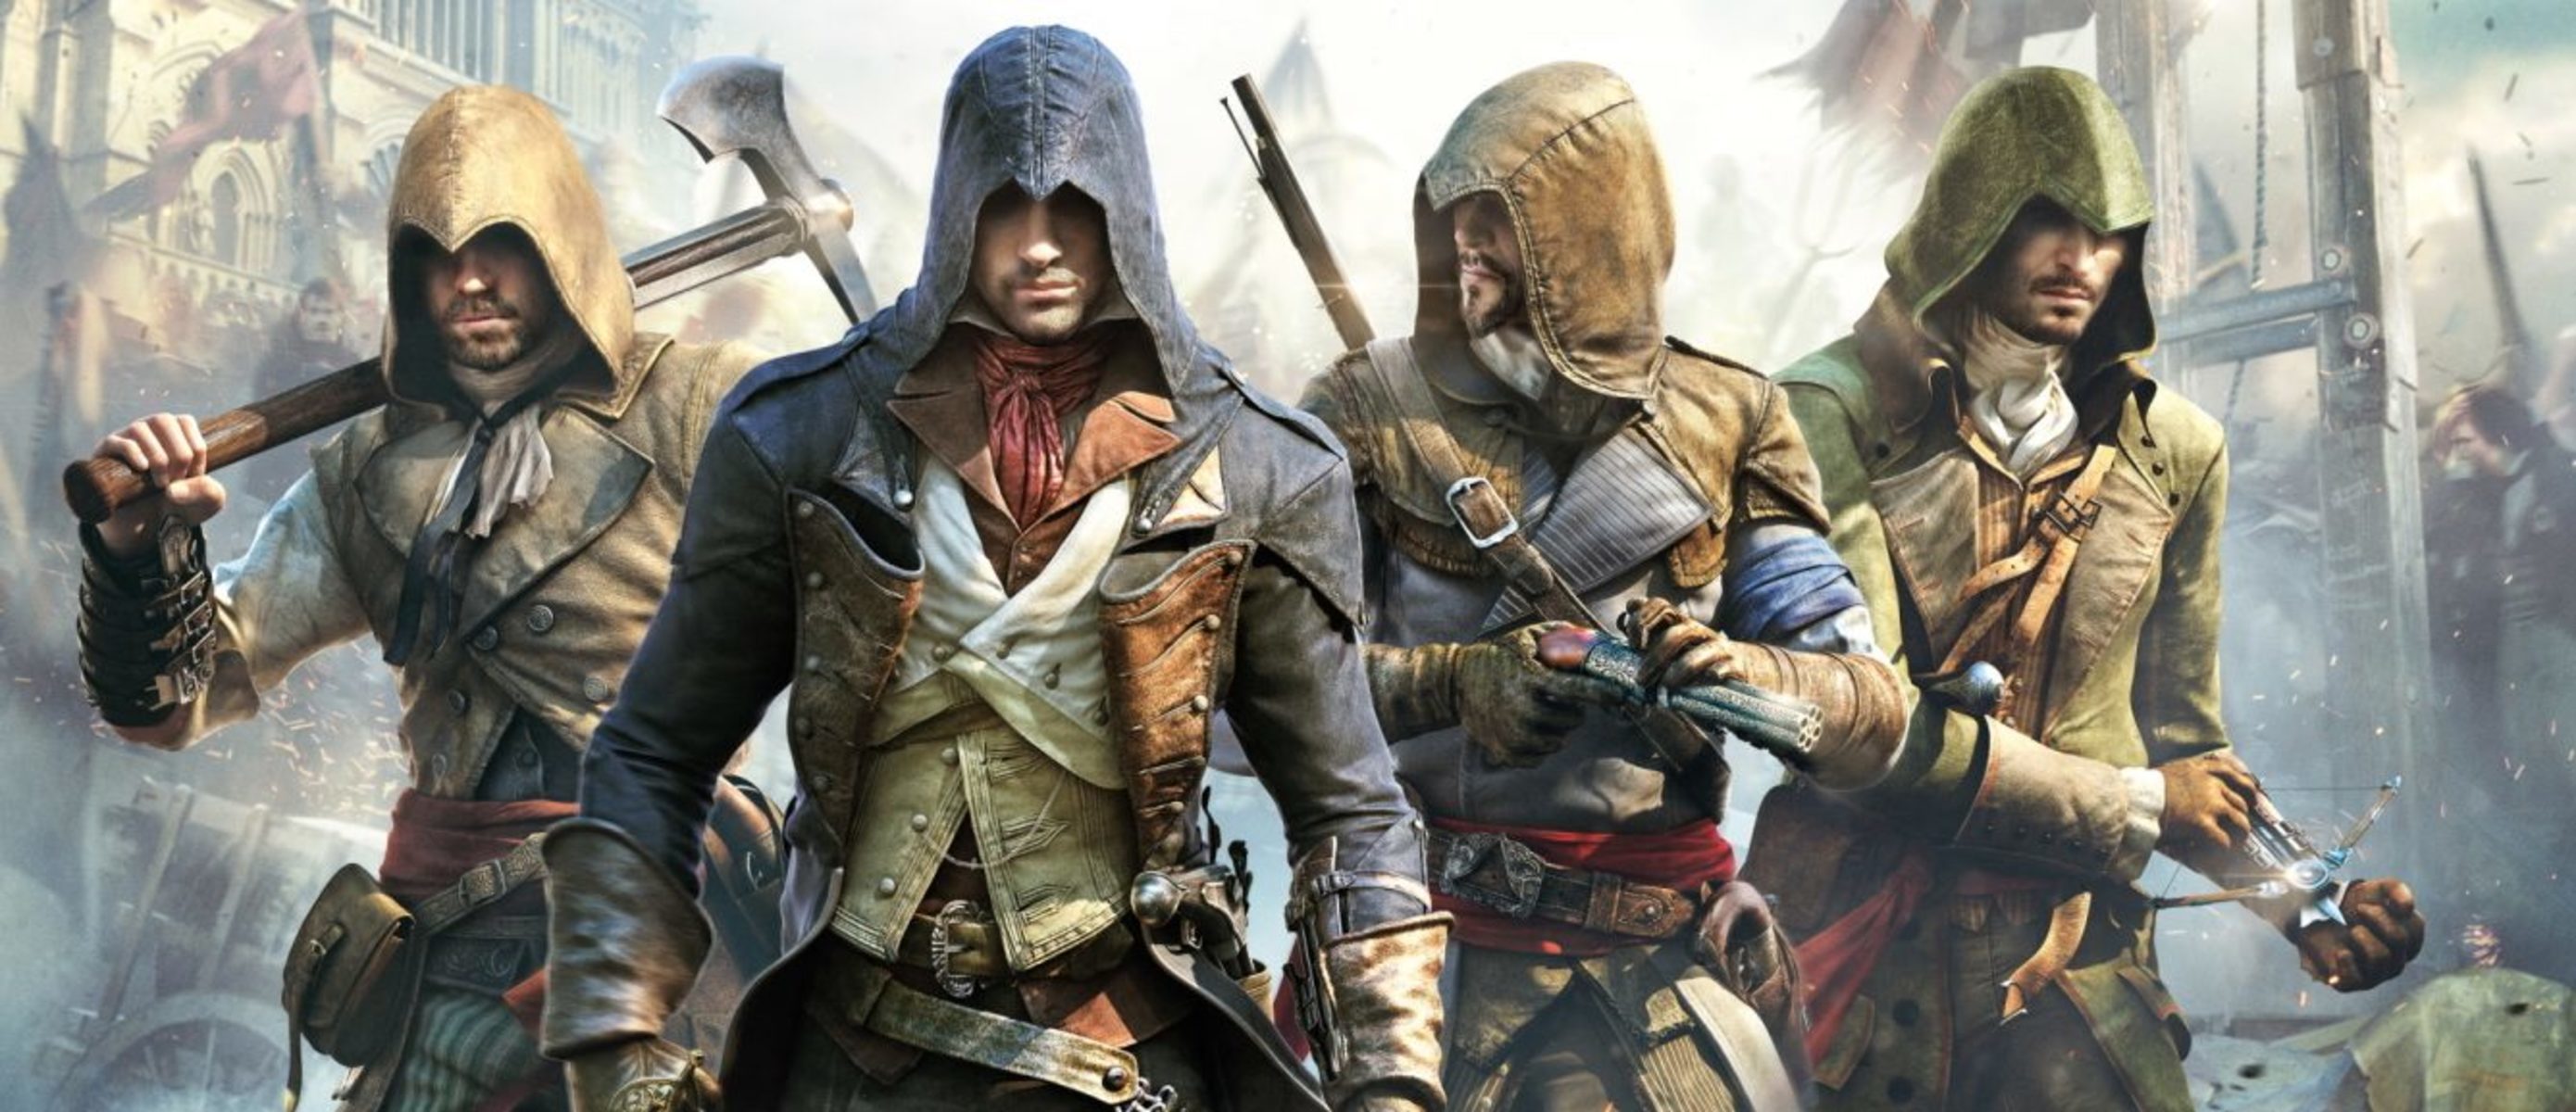 Ассасины игра видео. Ассасин единство. Ассасин Крид 10. Assassin’s Creed: Unity – 2014.